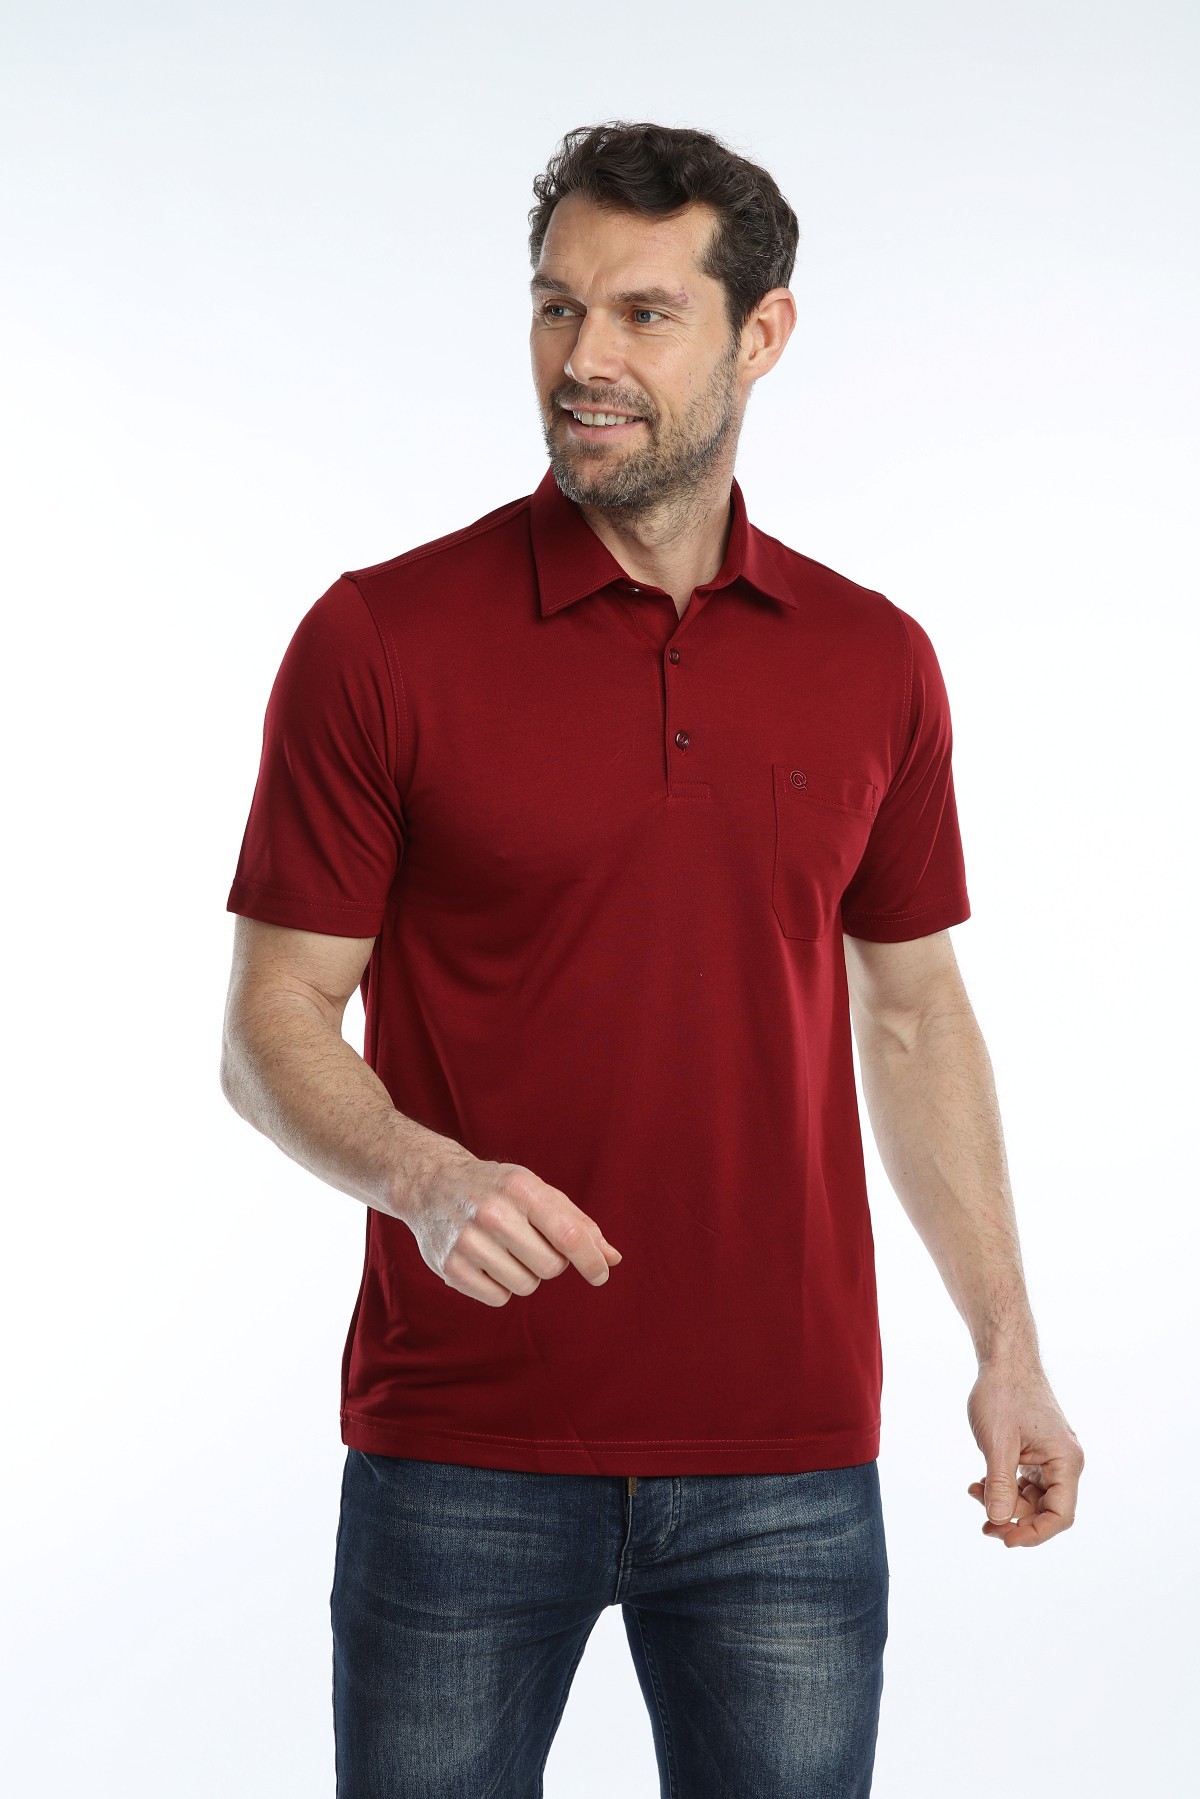 Çizgi Triko Erkek Gömlek Yaka Tişört Düz Renk Günlük Cep Detaylı - BORDO